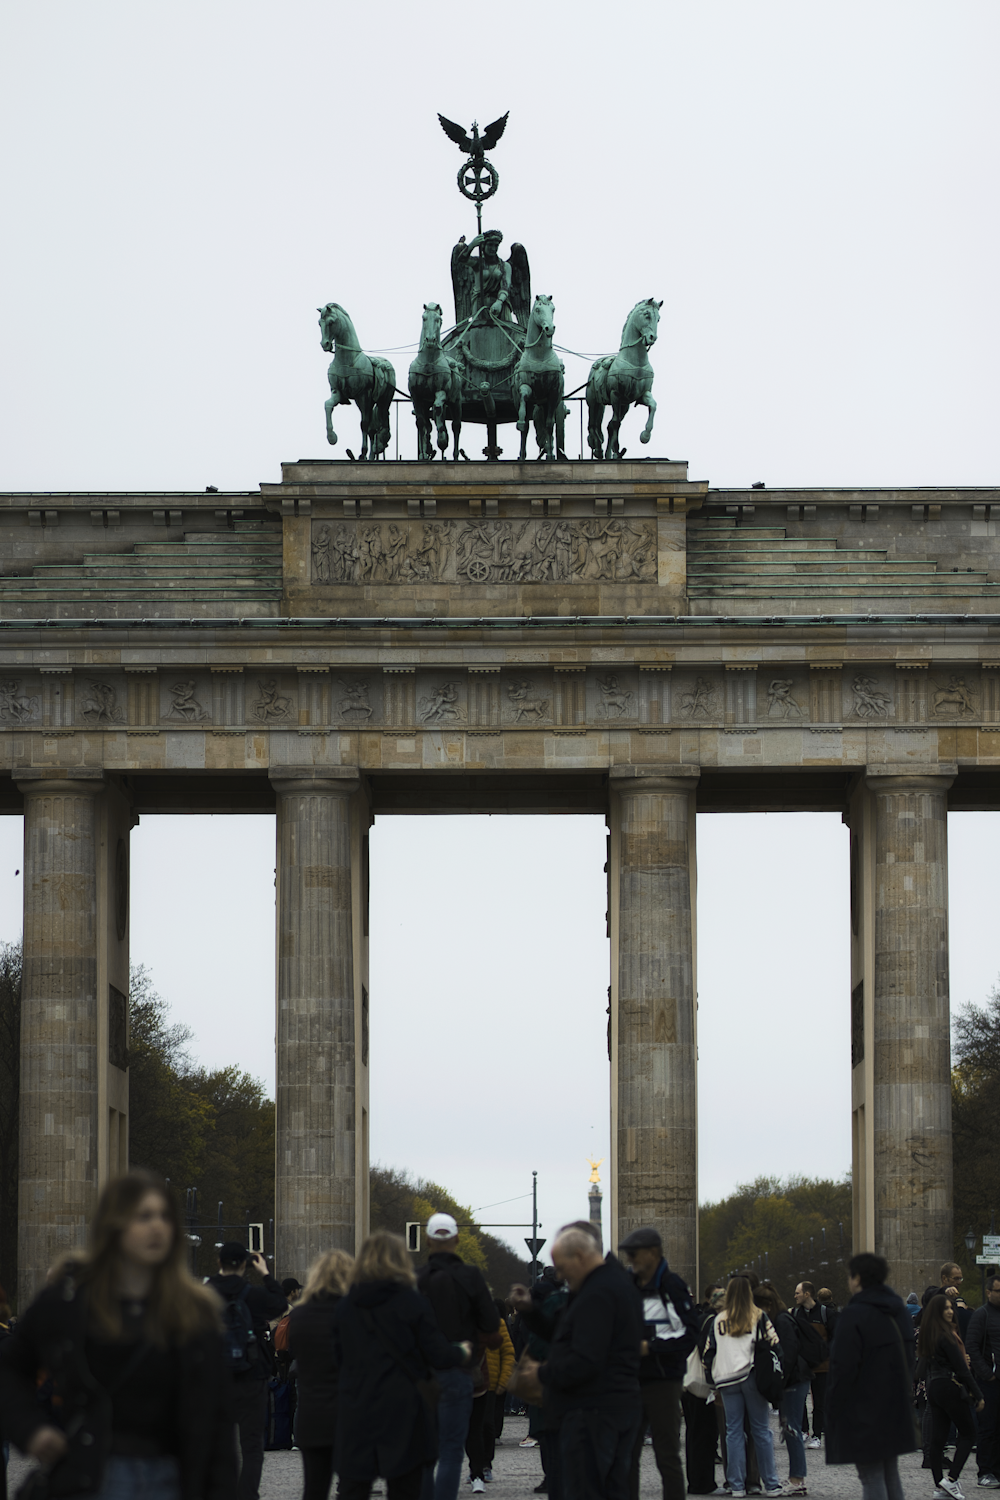 ブランデンブルク門を背景に馬を上にした記念碑の前に立っている人々のグループ